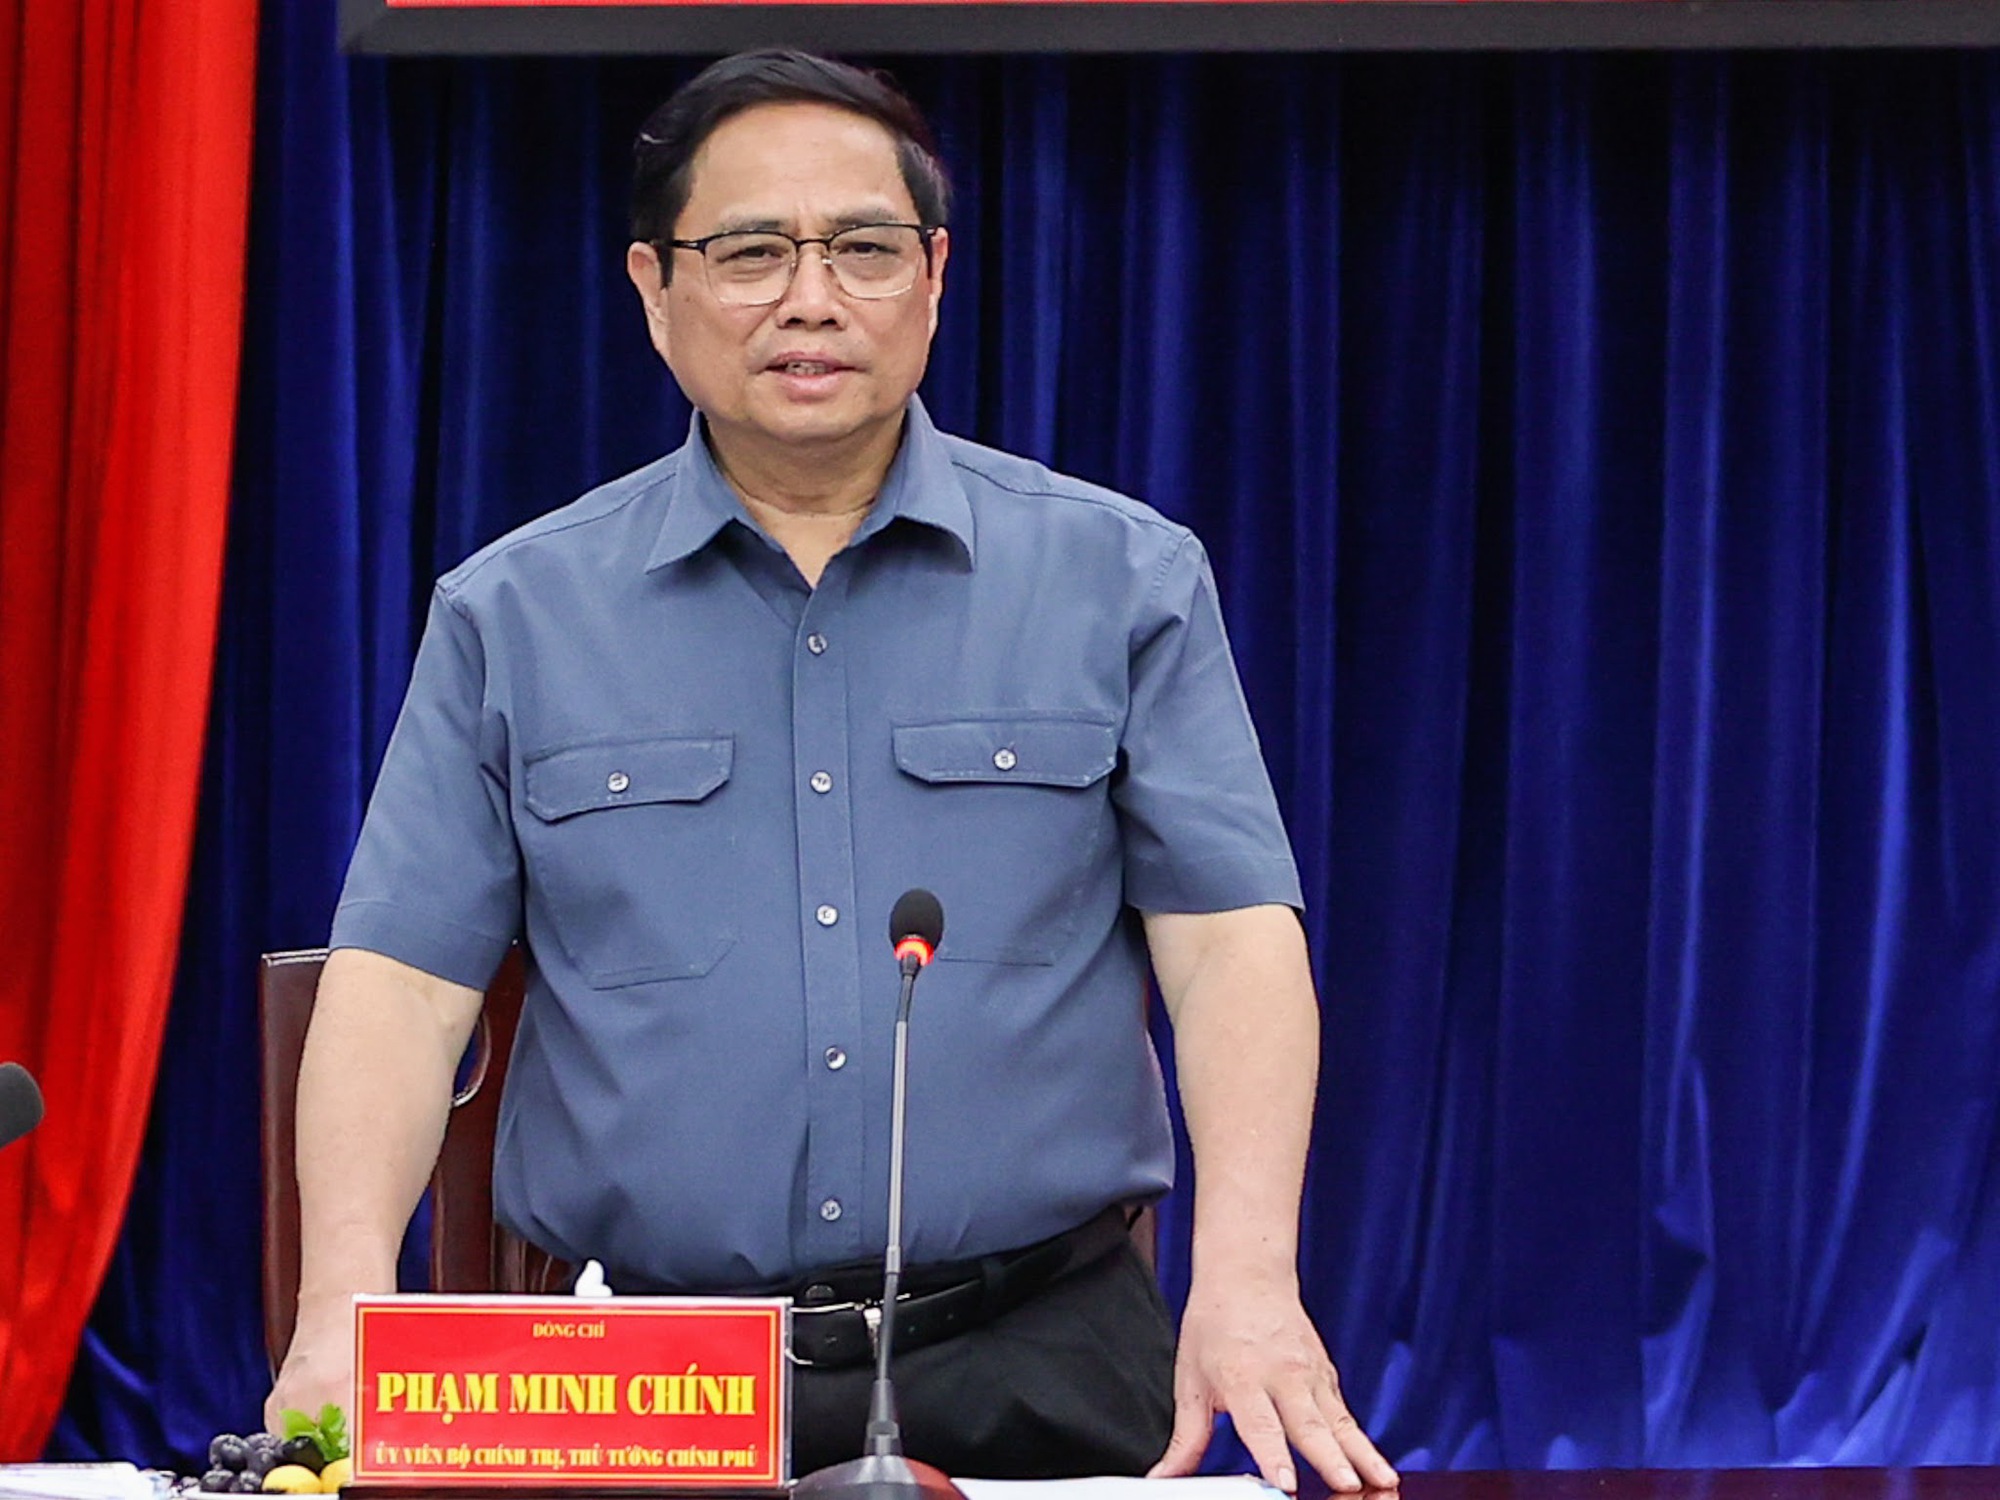 Thủ tướng Phạm Minh Chính: Phân loại doanh nghiệp, ngân hàng để nâng hạn mức tín dụng phù hợp, hiệu quả - Ảnh 6.